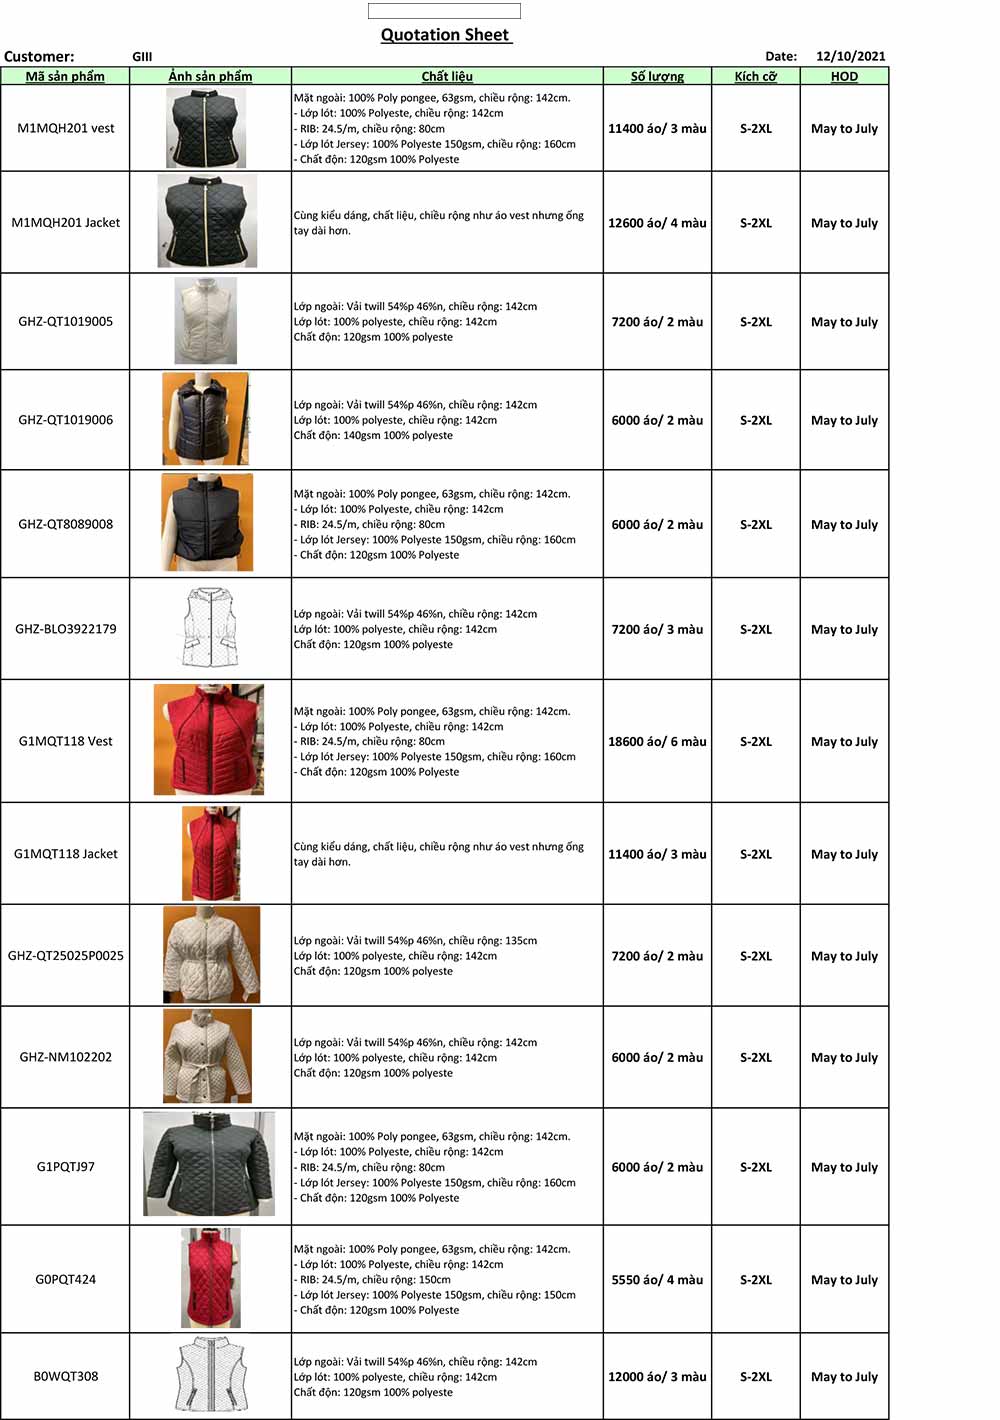 Đơn hàng xuất khẩu áo khoác da sang thị trường Mỹ MM01-161221